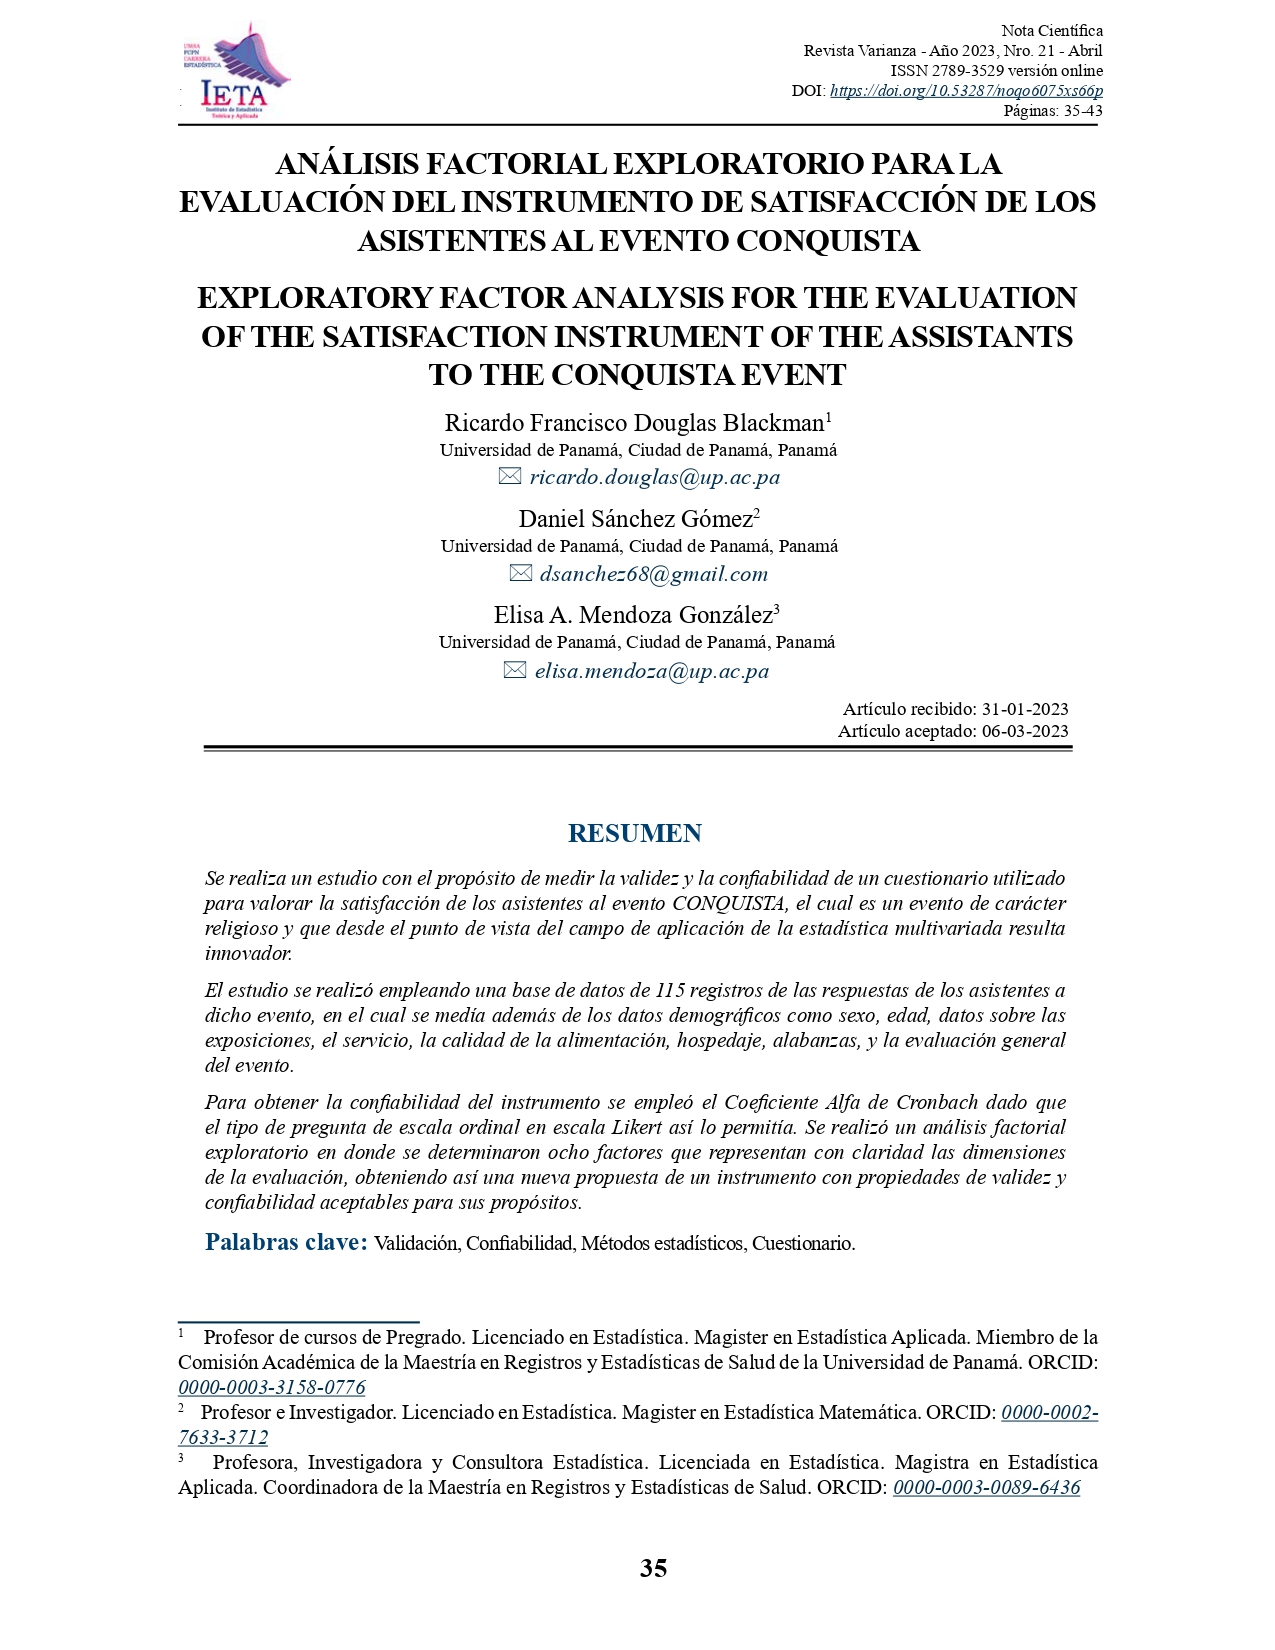 Análisis factorial exploratorio para la evaluación del instrumento de satisfacción de los asistentes al evento CONQUISTA